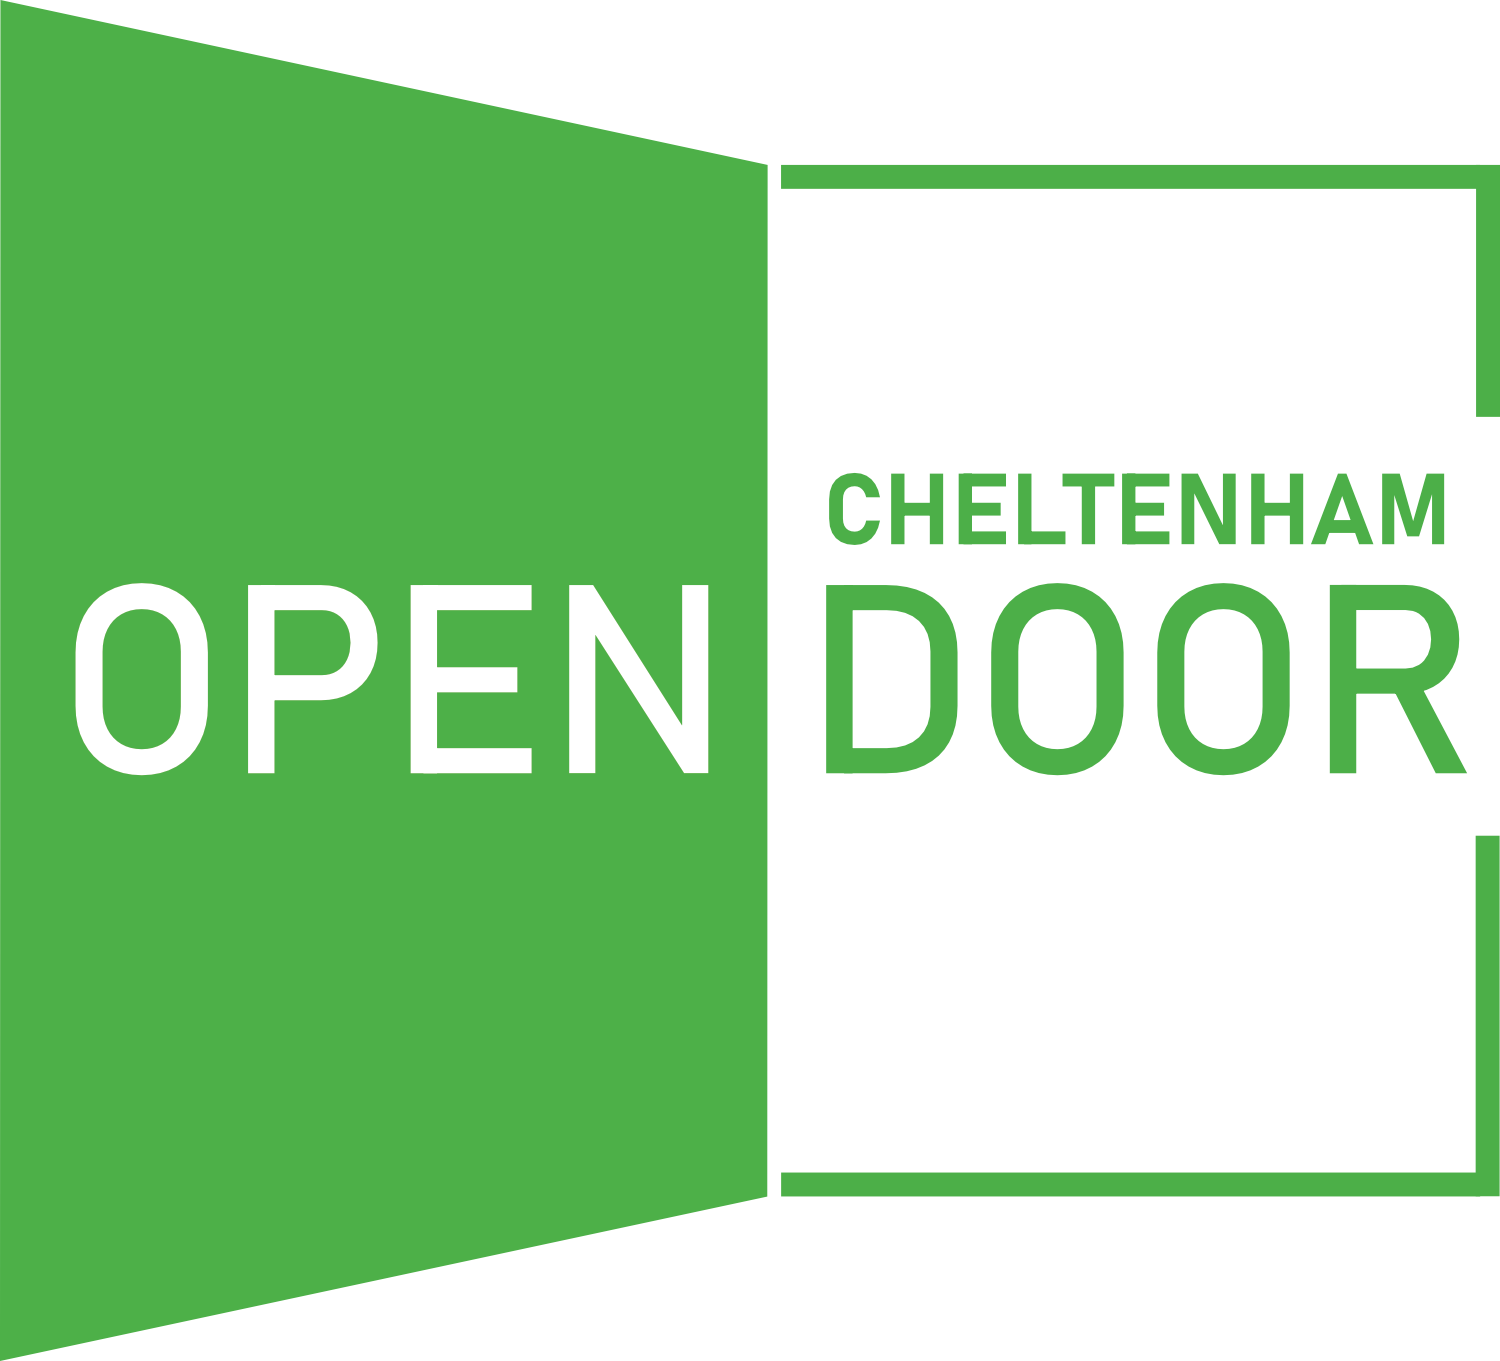 Wynne-Jones IP to support Cheltenham Open Door throughout 2023